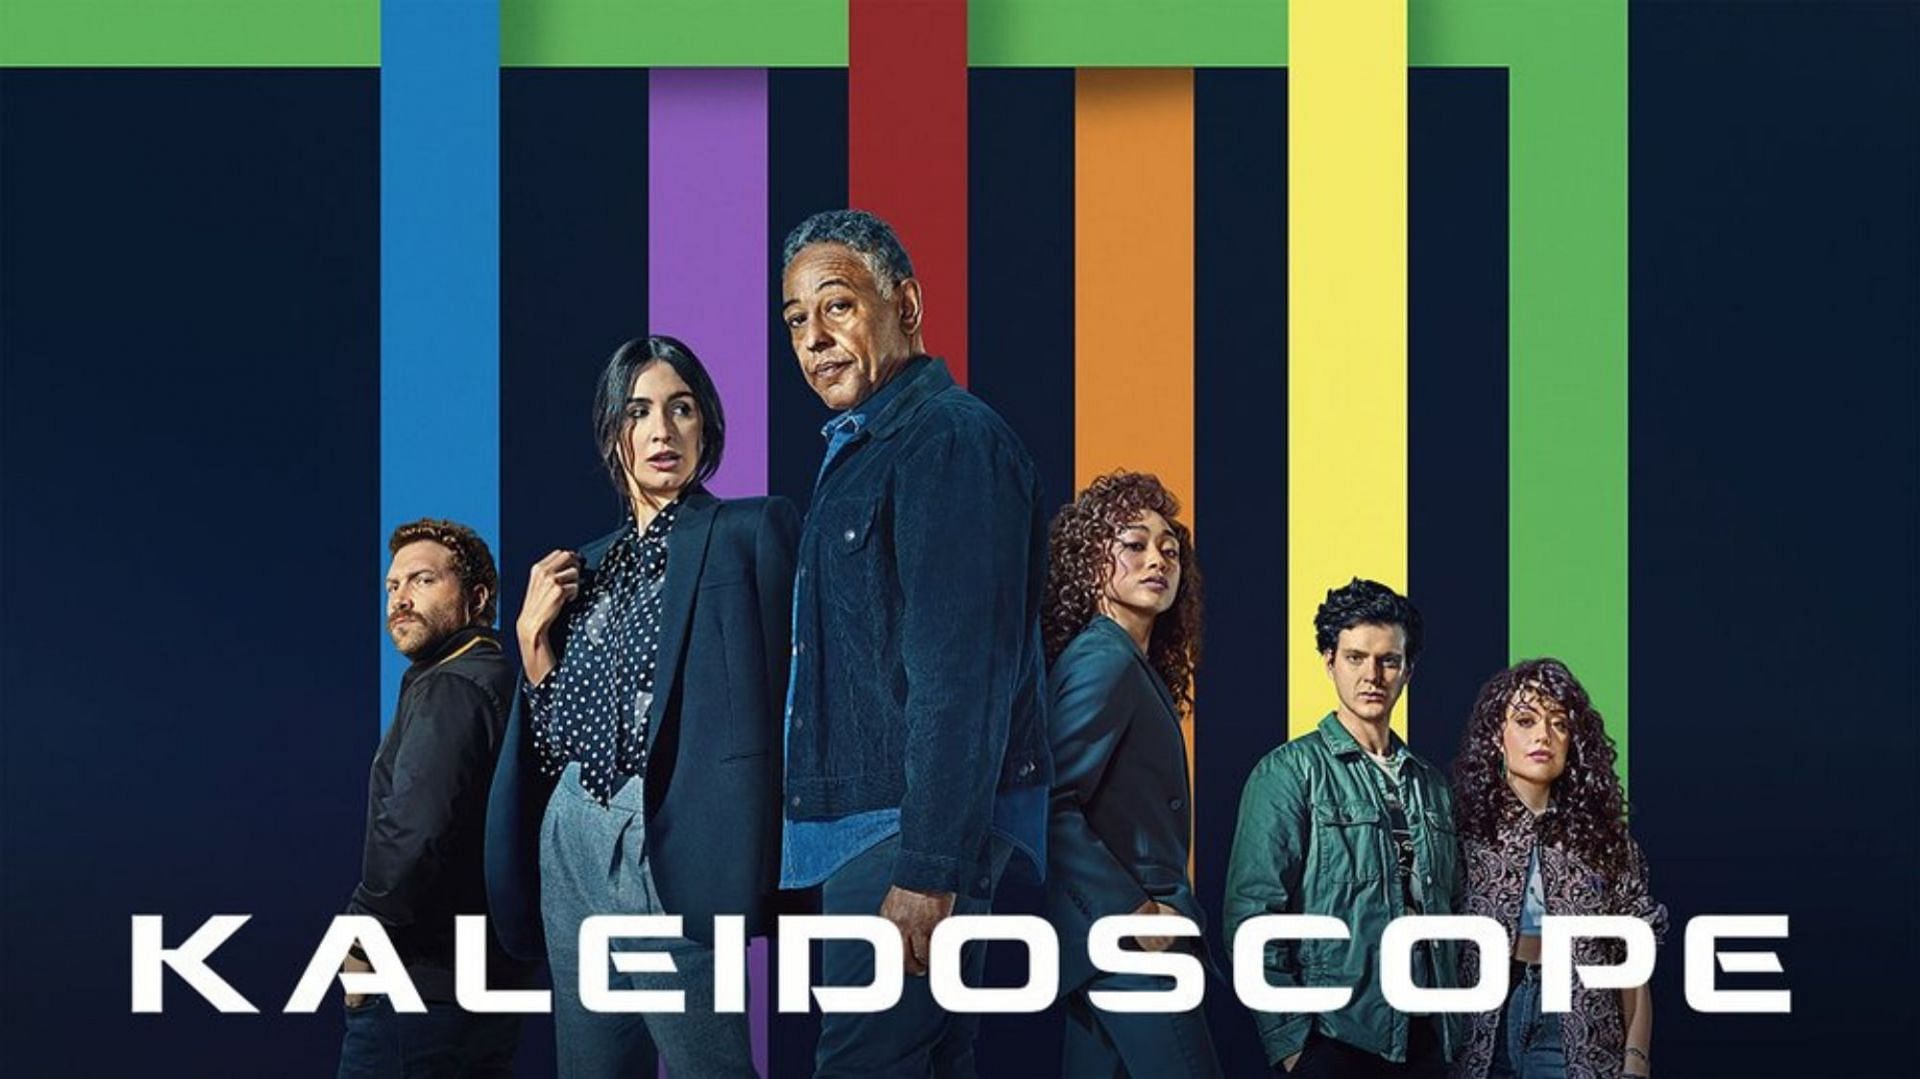 Kaleidoscope (Image via Netflix)